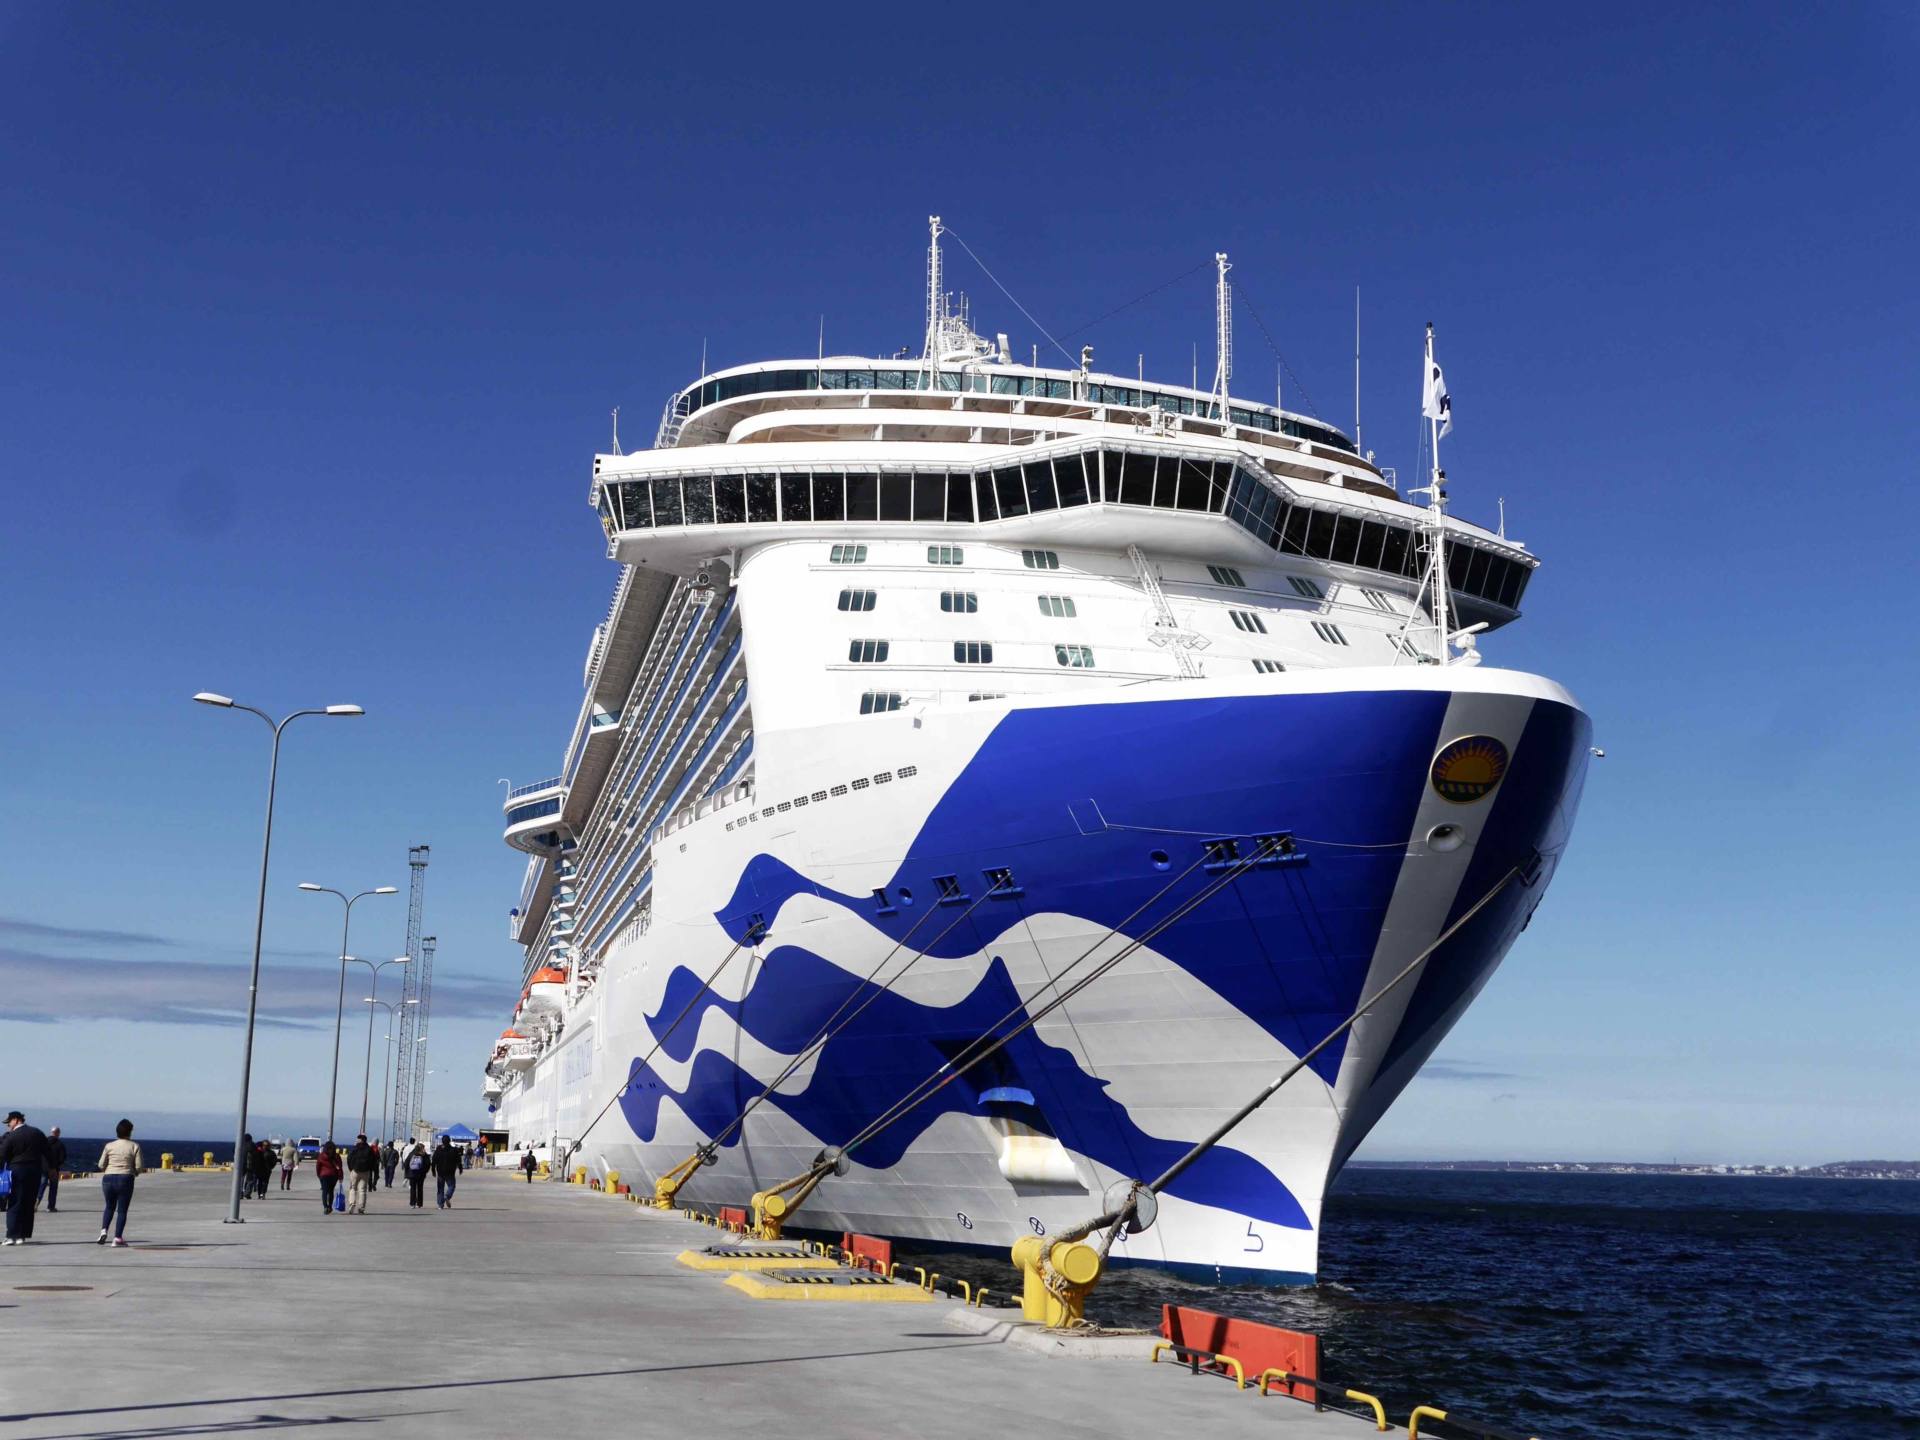 Itinerario de crucero por el Mediterráneo: visita 6 puertos en 7 días